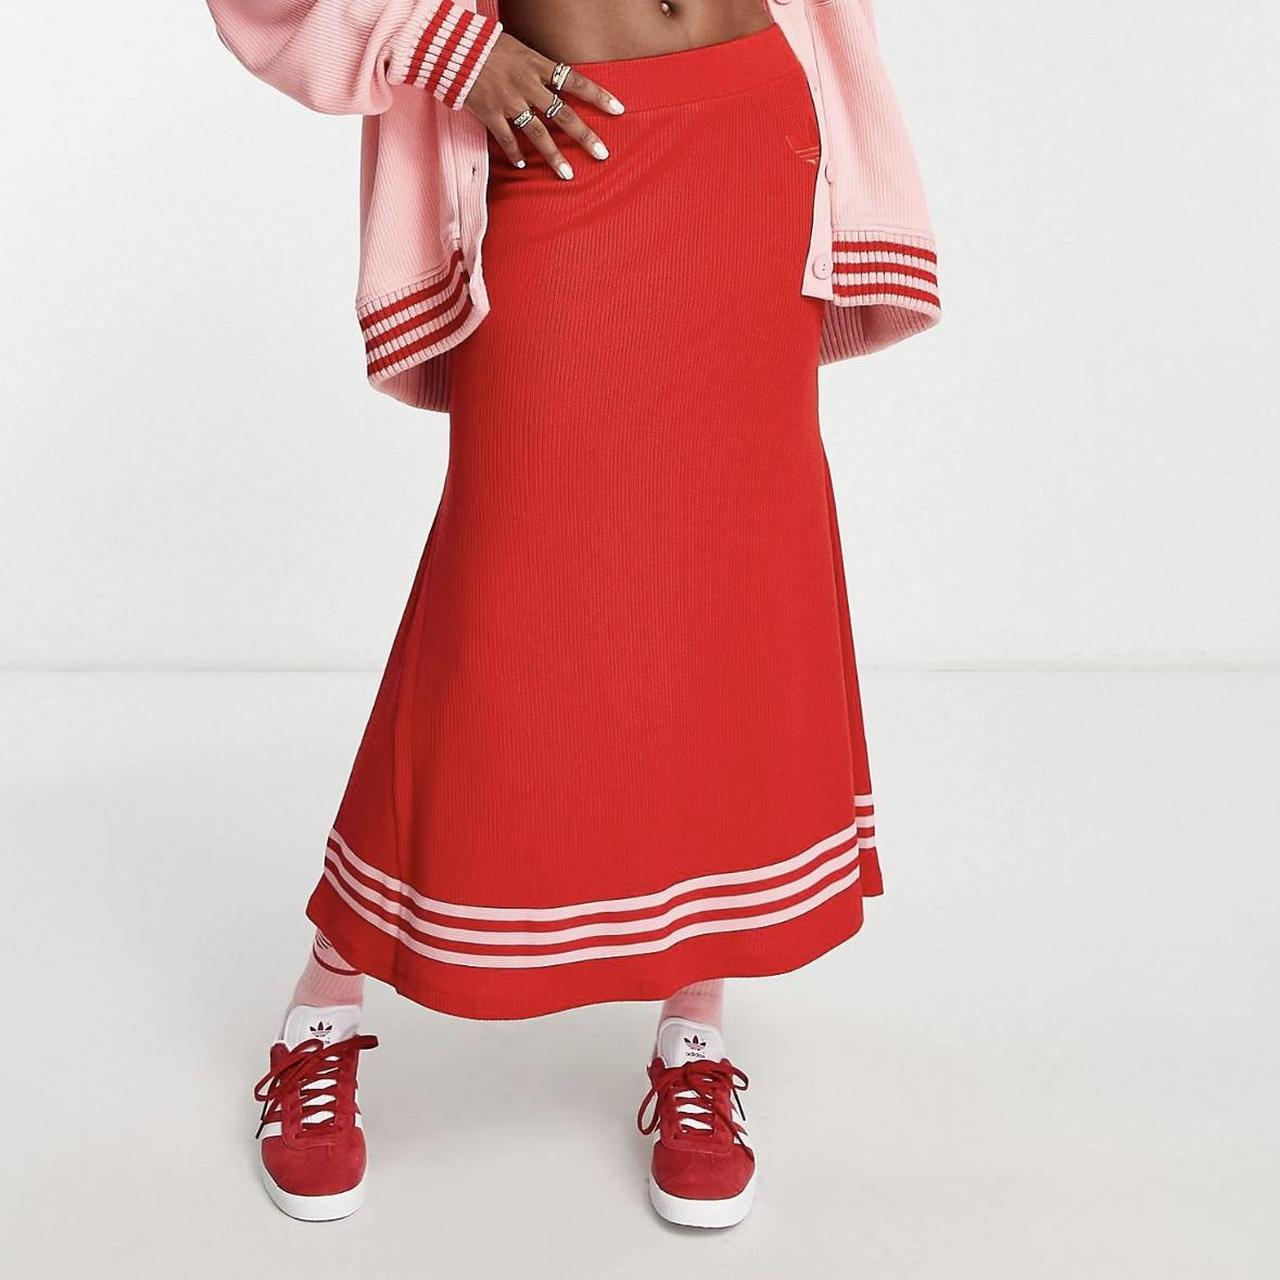 Adidas Originals Women's Red and Pink Skirt | Depop